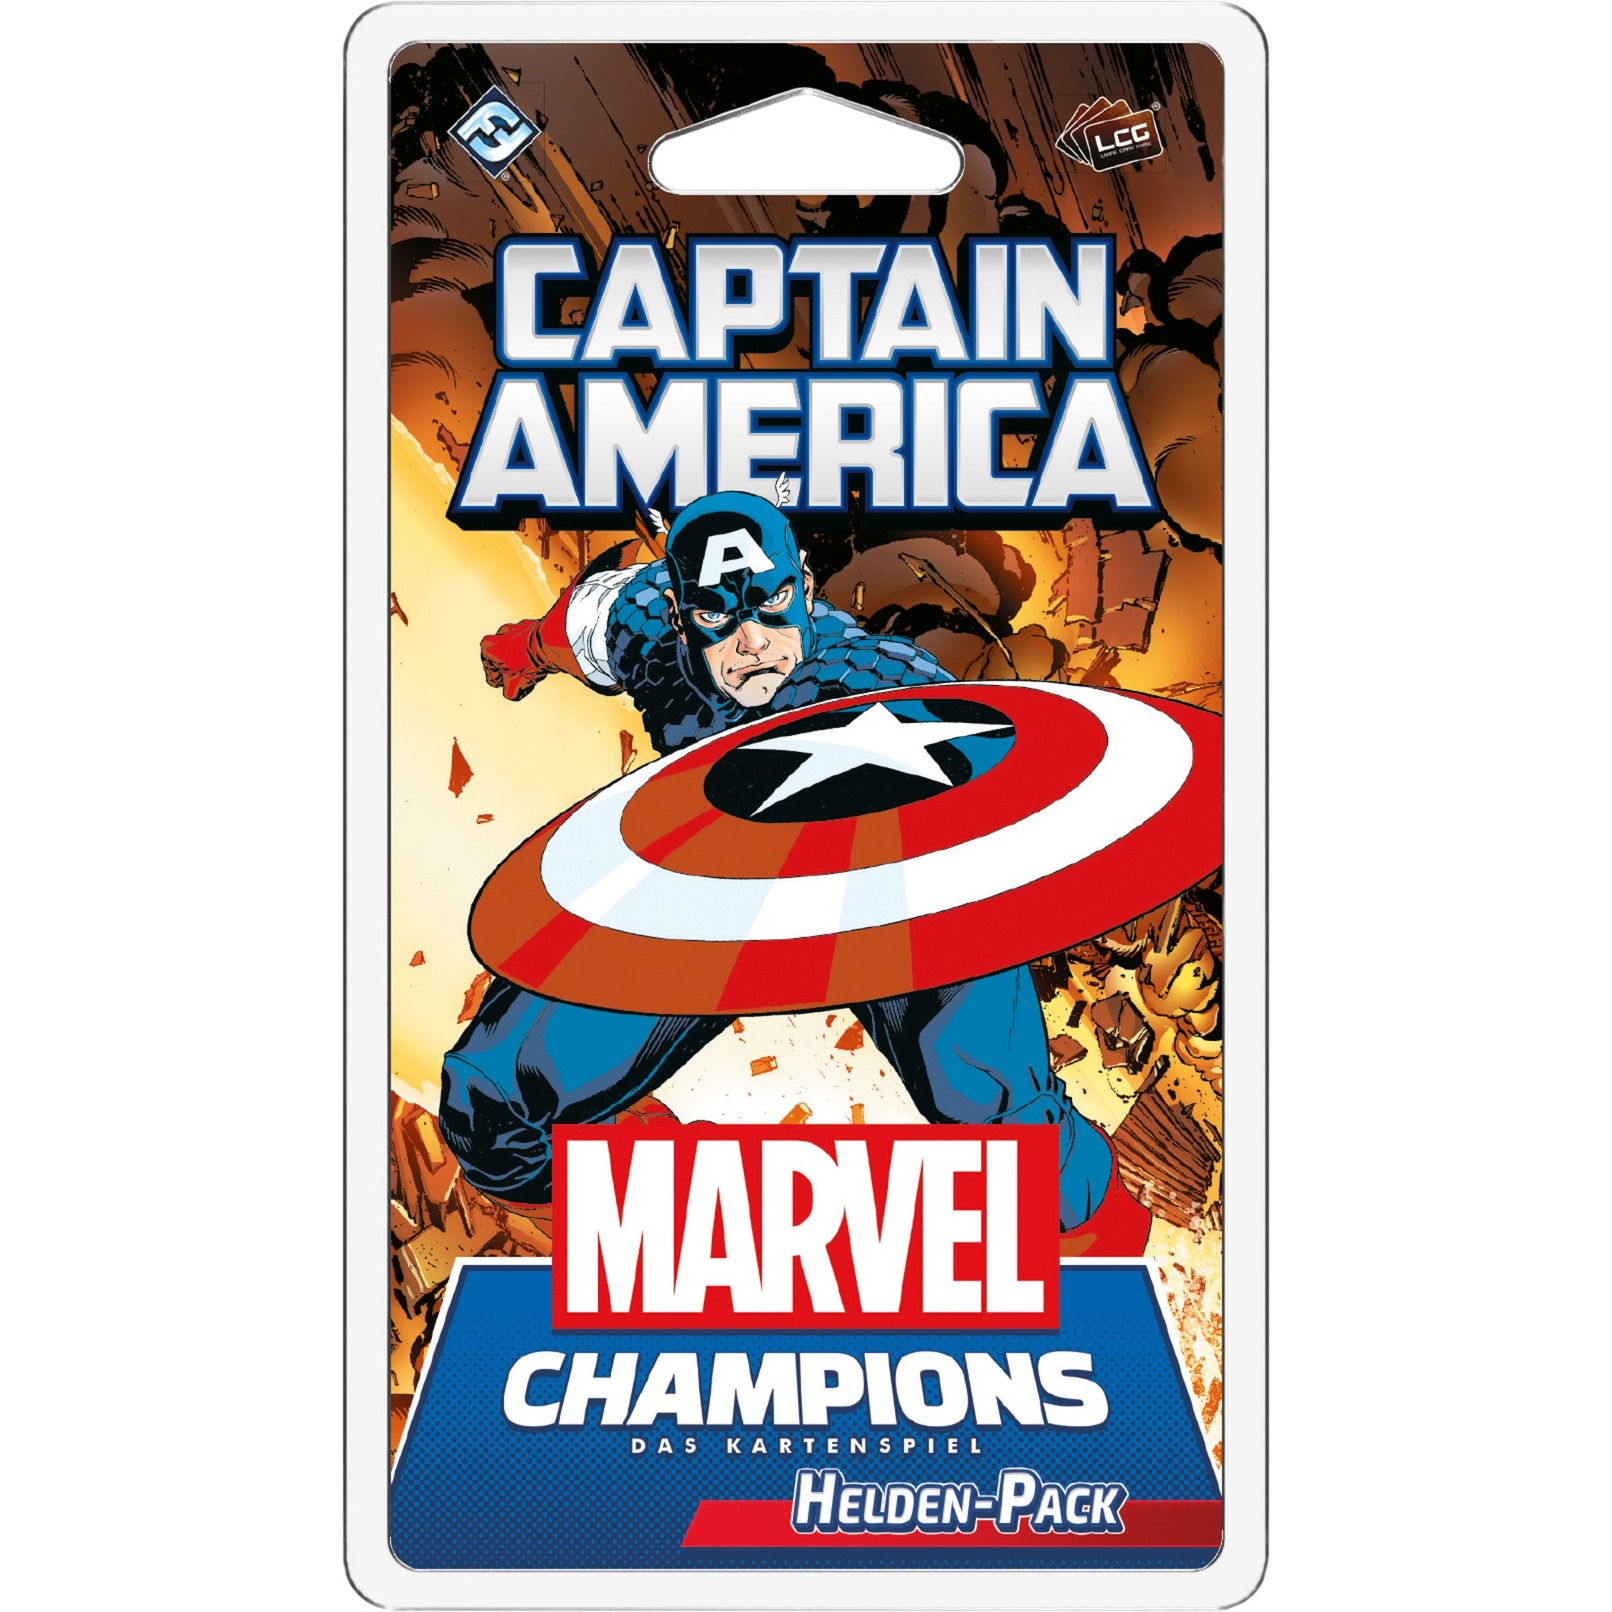 Image of Alternate - Marvel Champions: Das Kartenspiel - Captain America online einkaufen bei Alternate